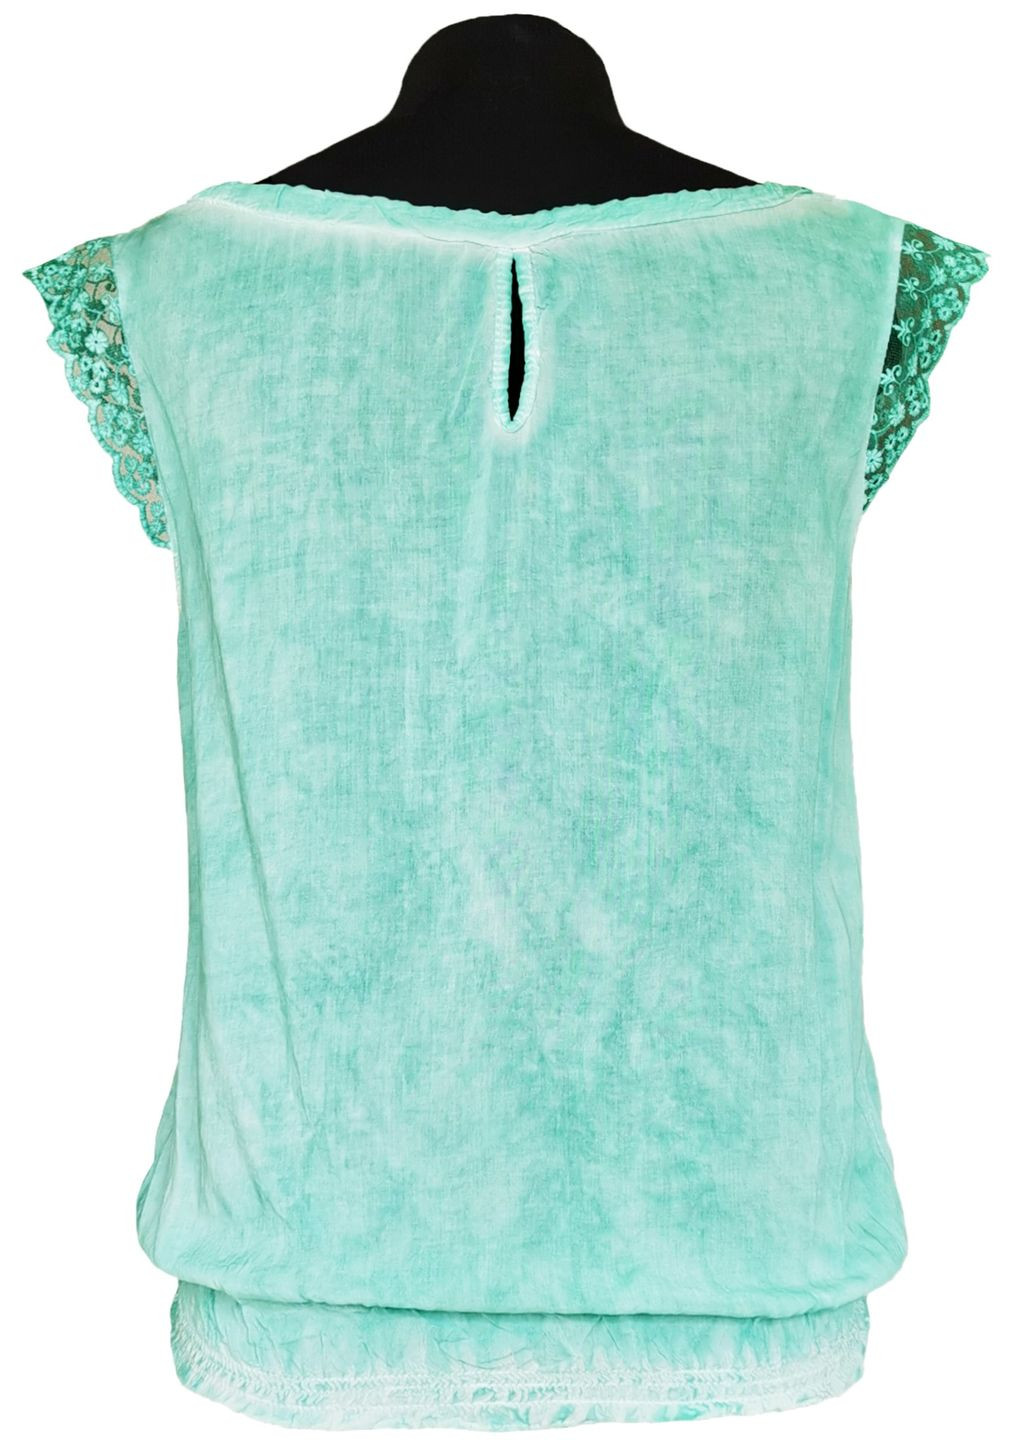 Мятная блузка женская летняя вискозная с коротким рукавом и кружевом мята free size No Brand